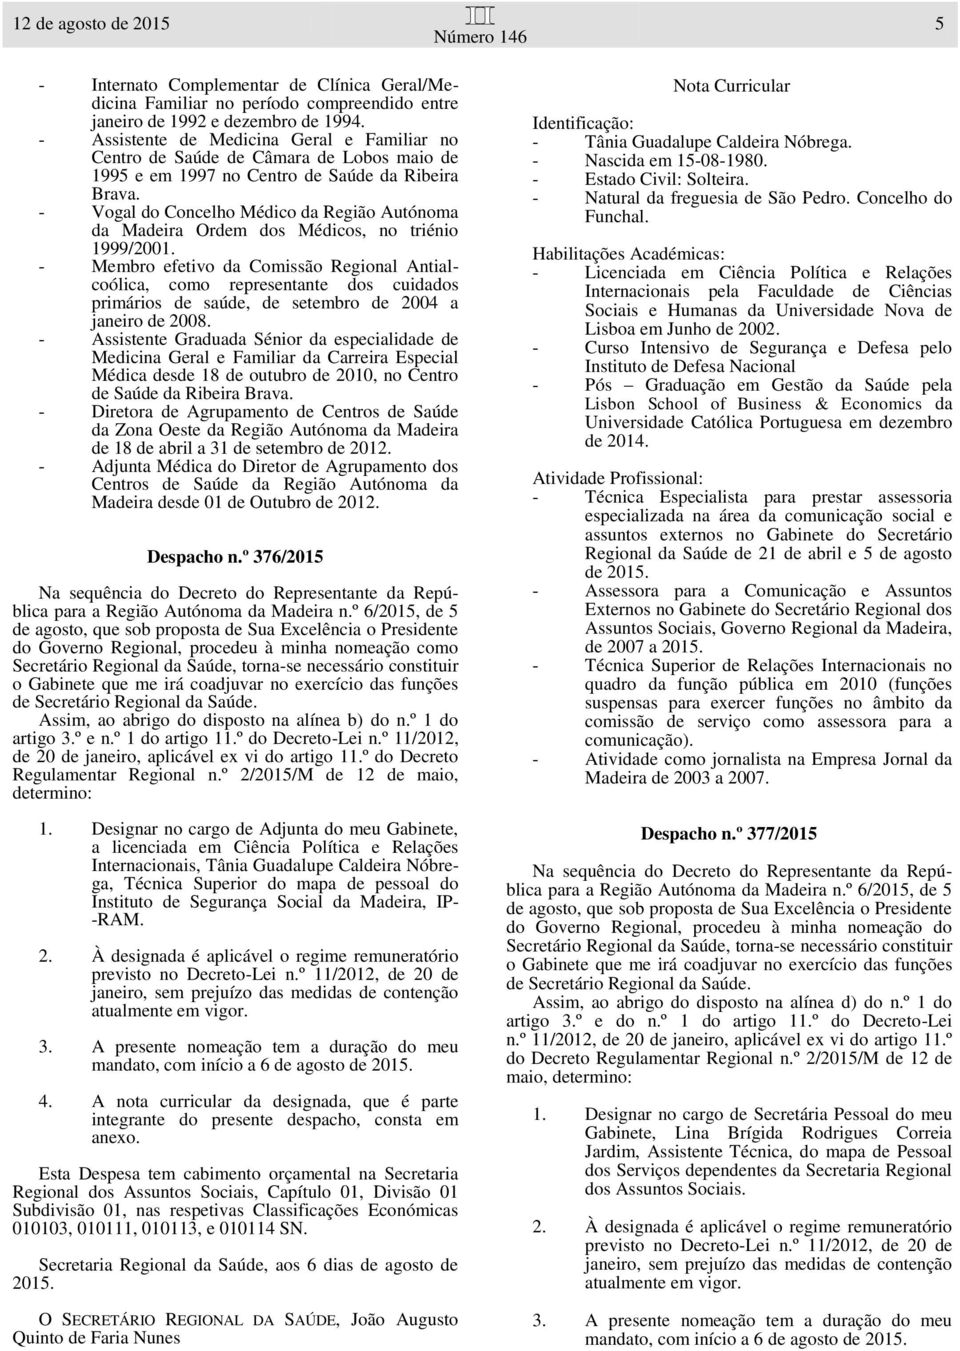 - Vogal do Concelho Médico da Região Autónoma da Madeira Ordem dos Médicos, no triénio 1999/2001.